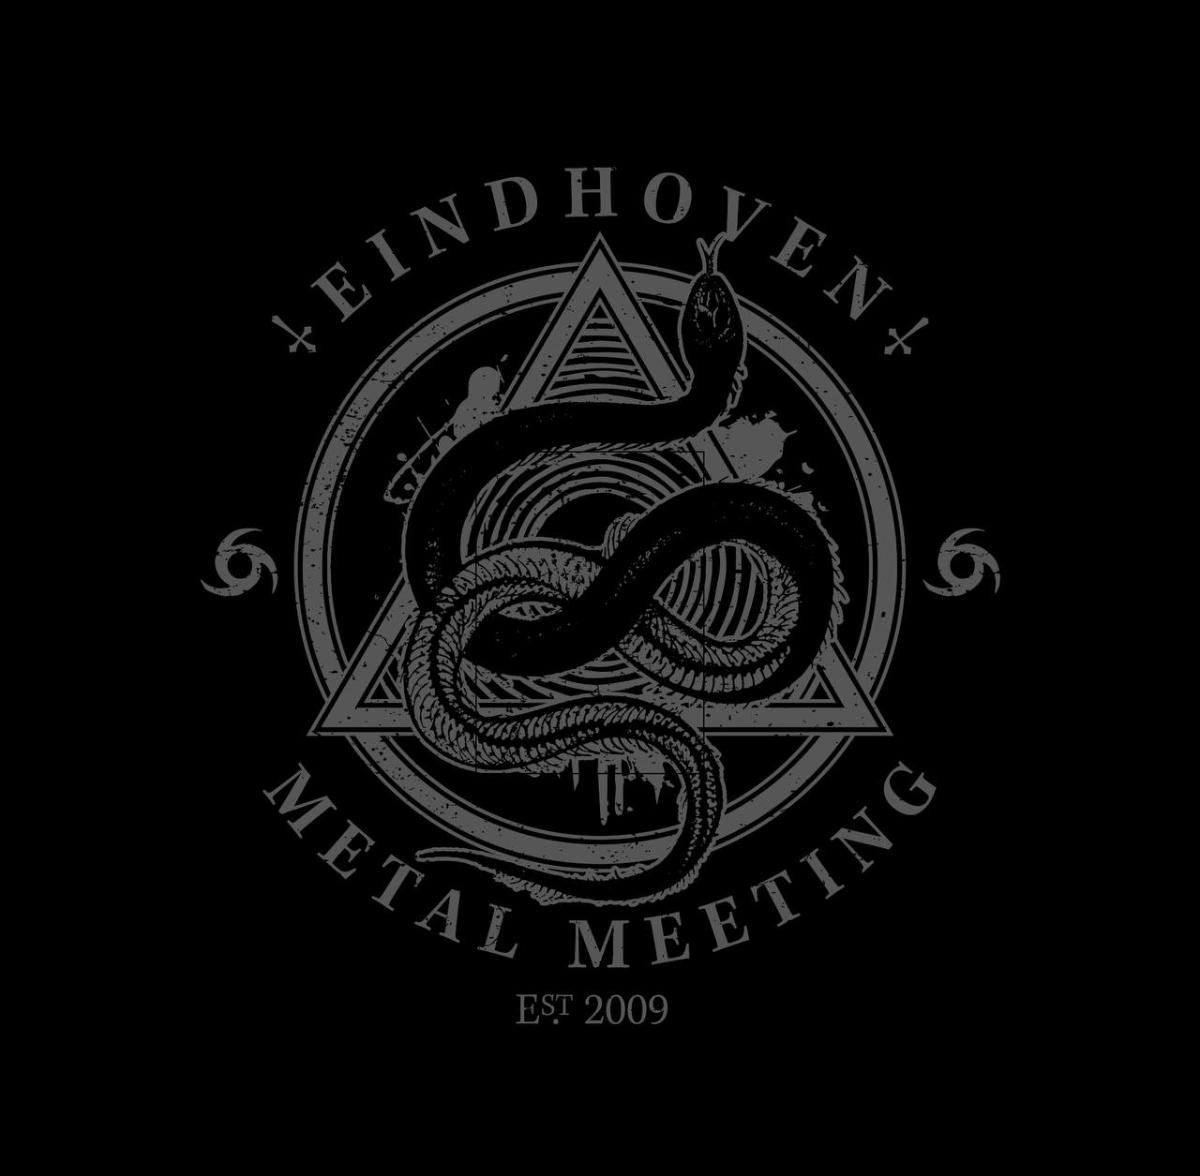 Eindhoven Metal Meeting